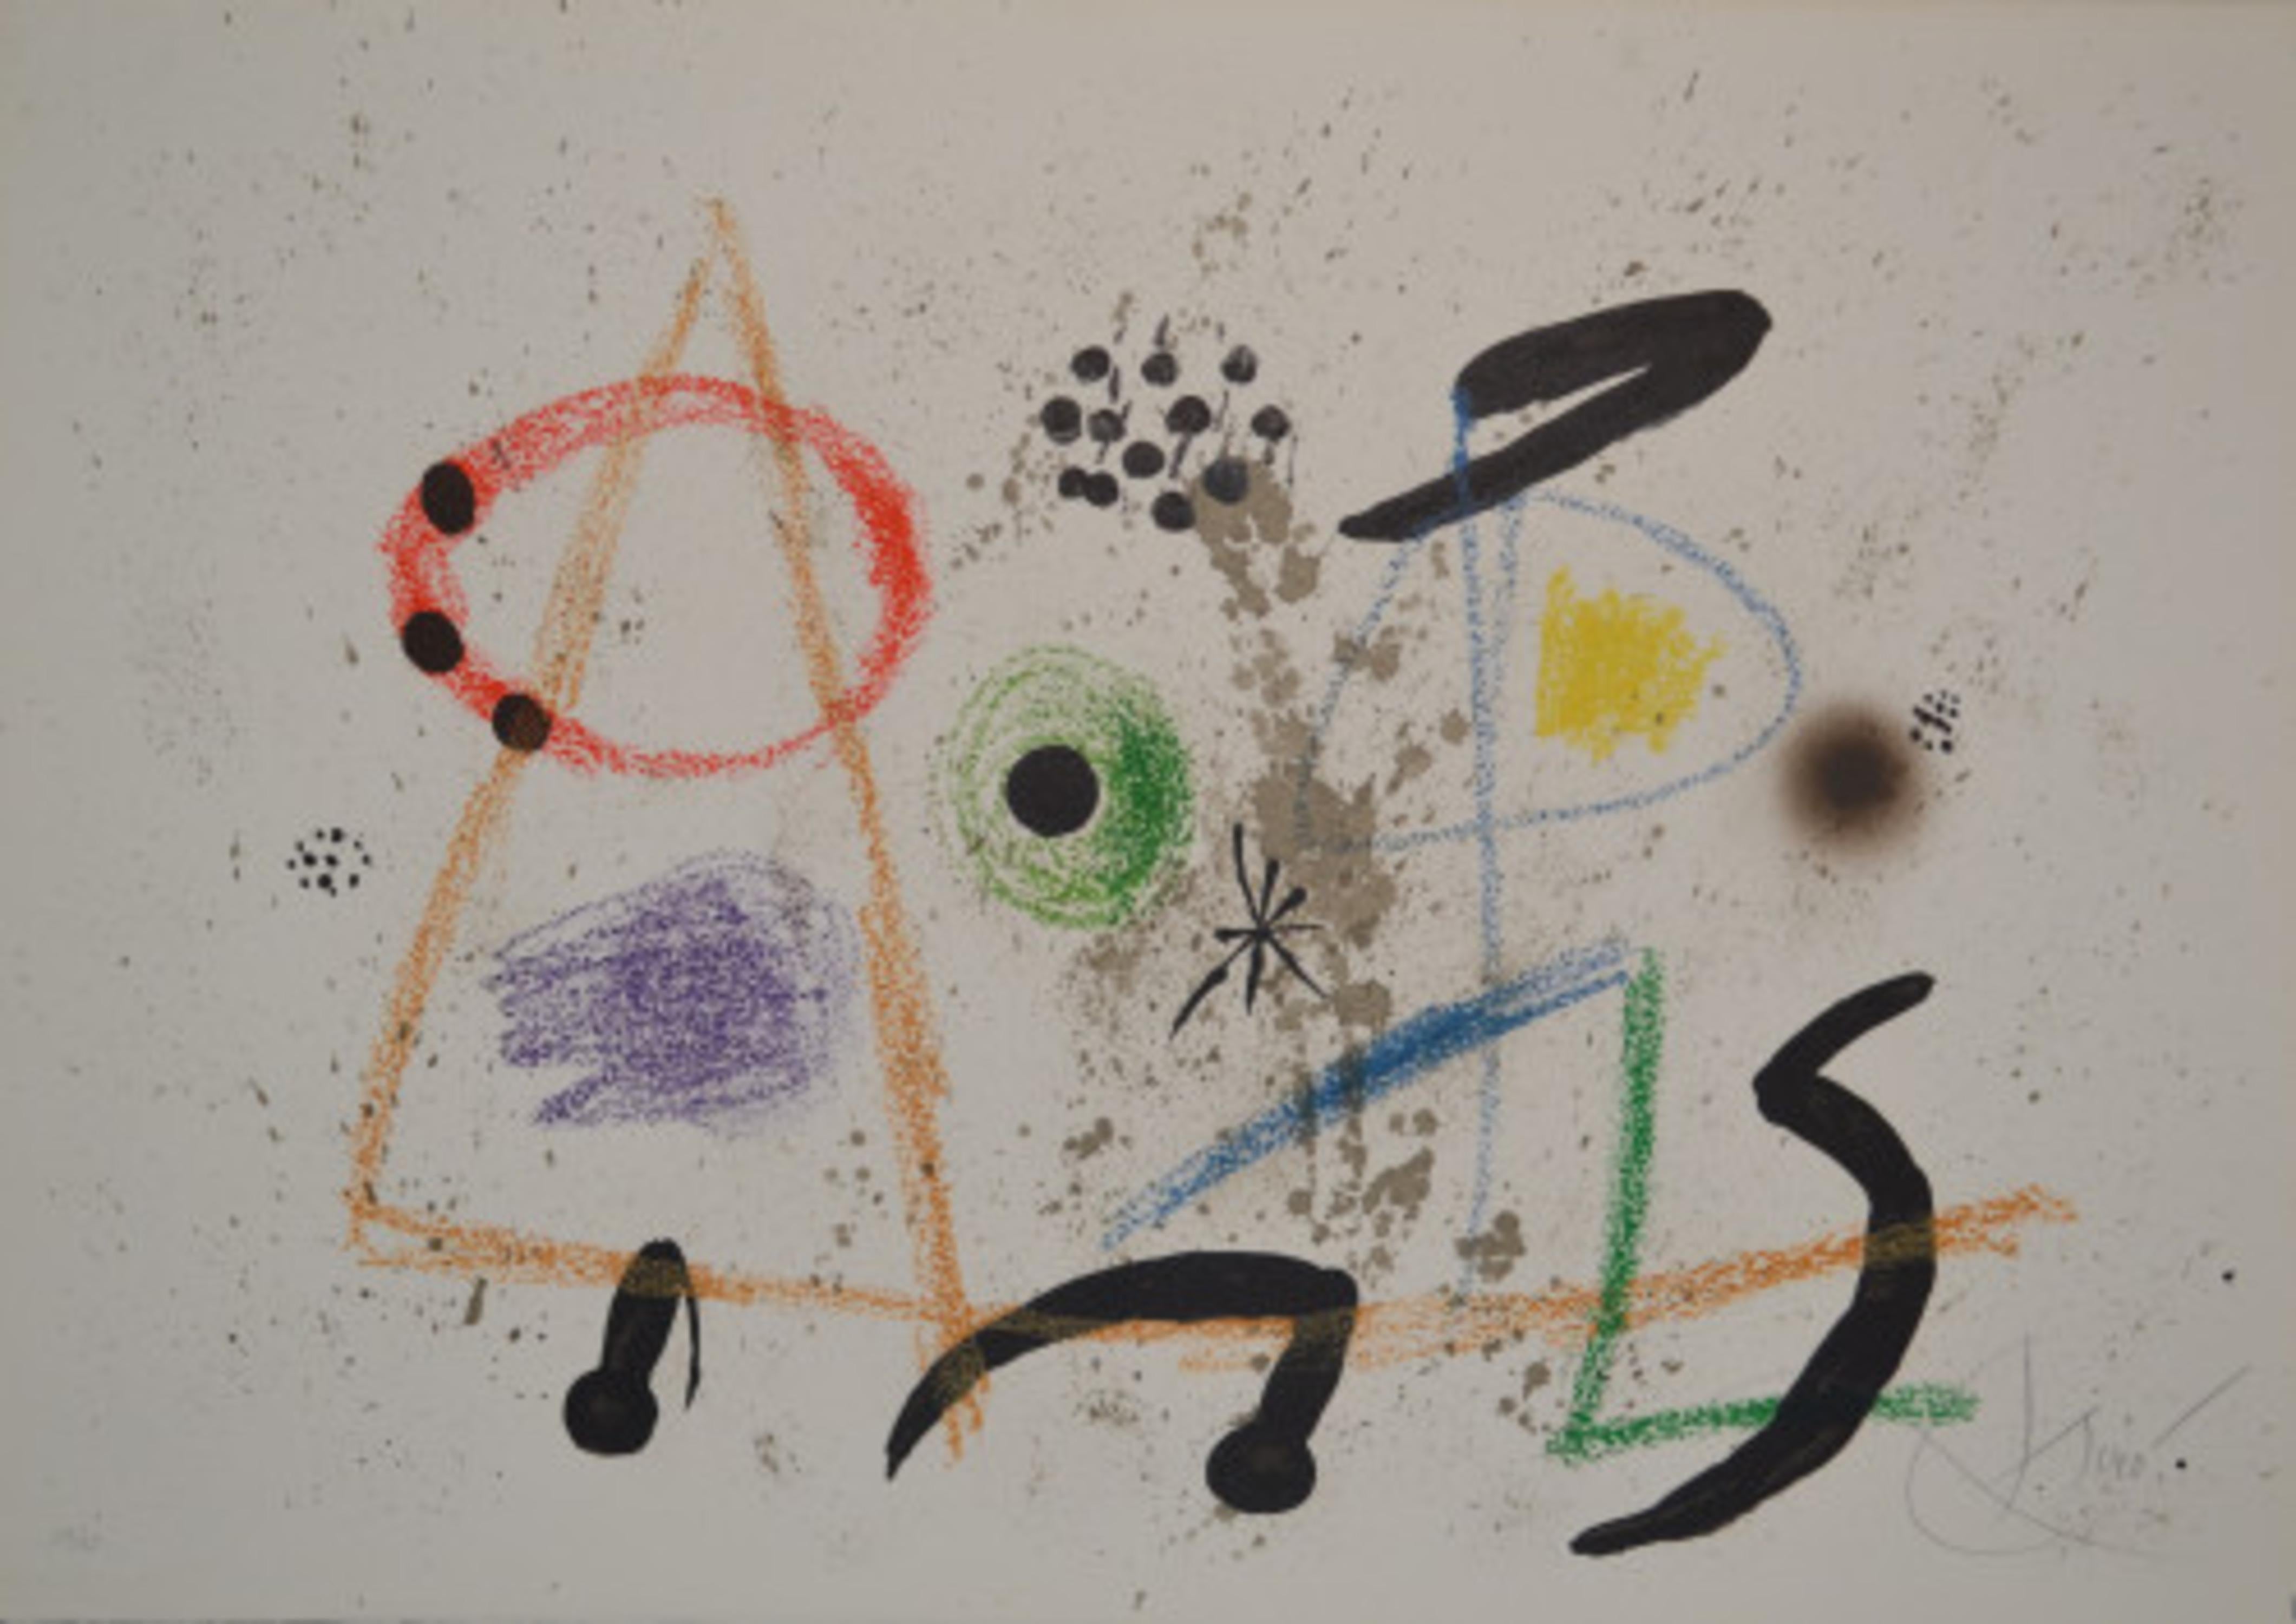 Maravillas - M1055 - Print by Joan Miró